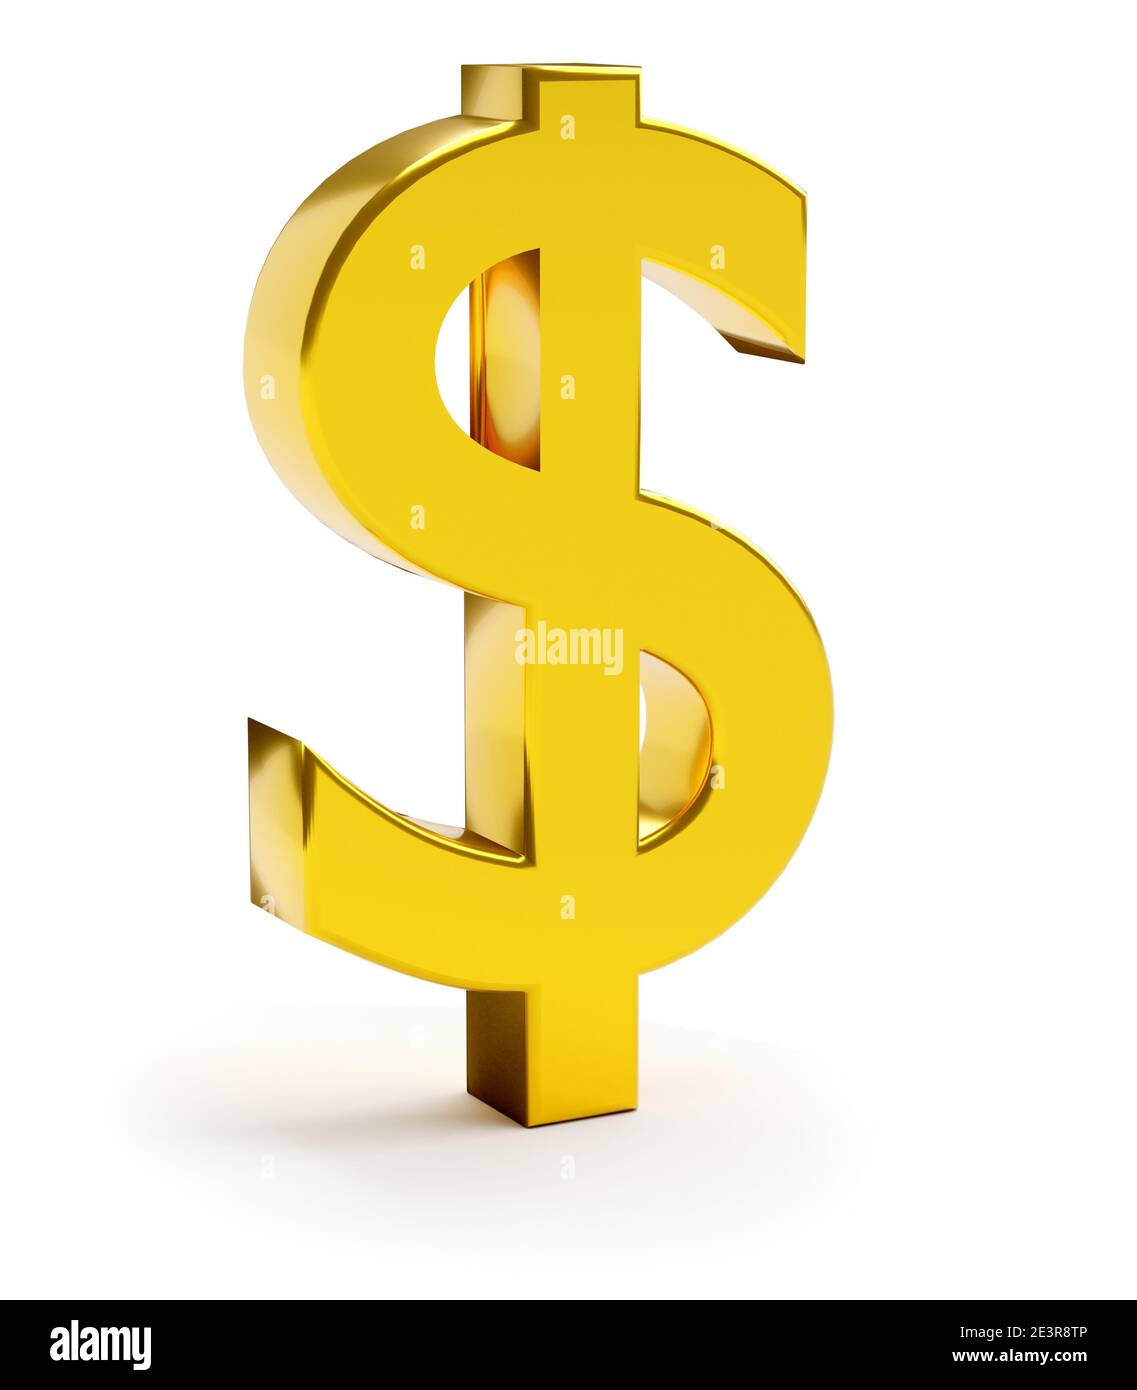 Simbolo finanziario e commerciale. Simbolo del dollaro d'oro. rendering 3d Foto Stock